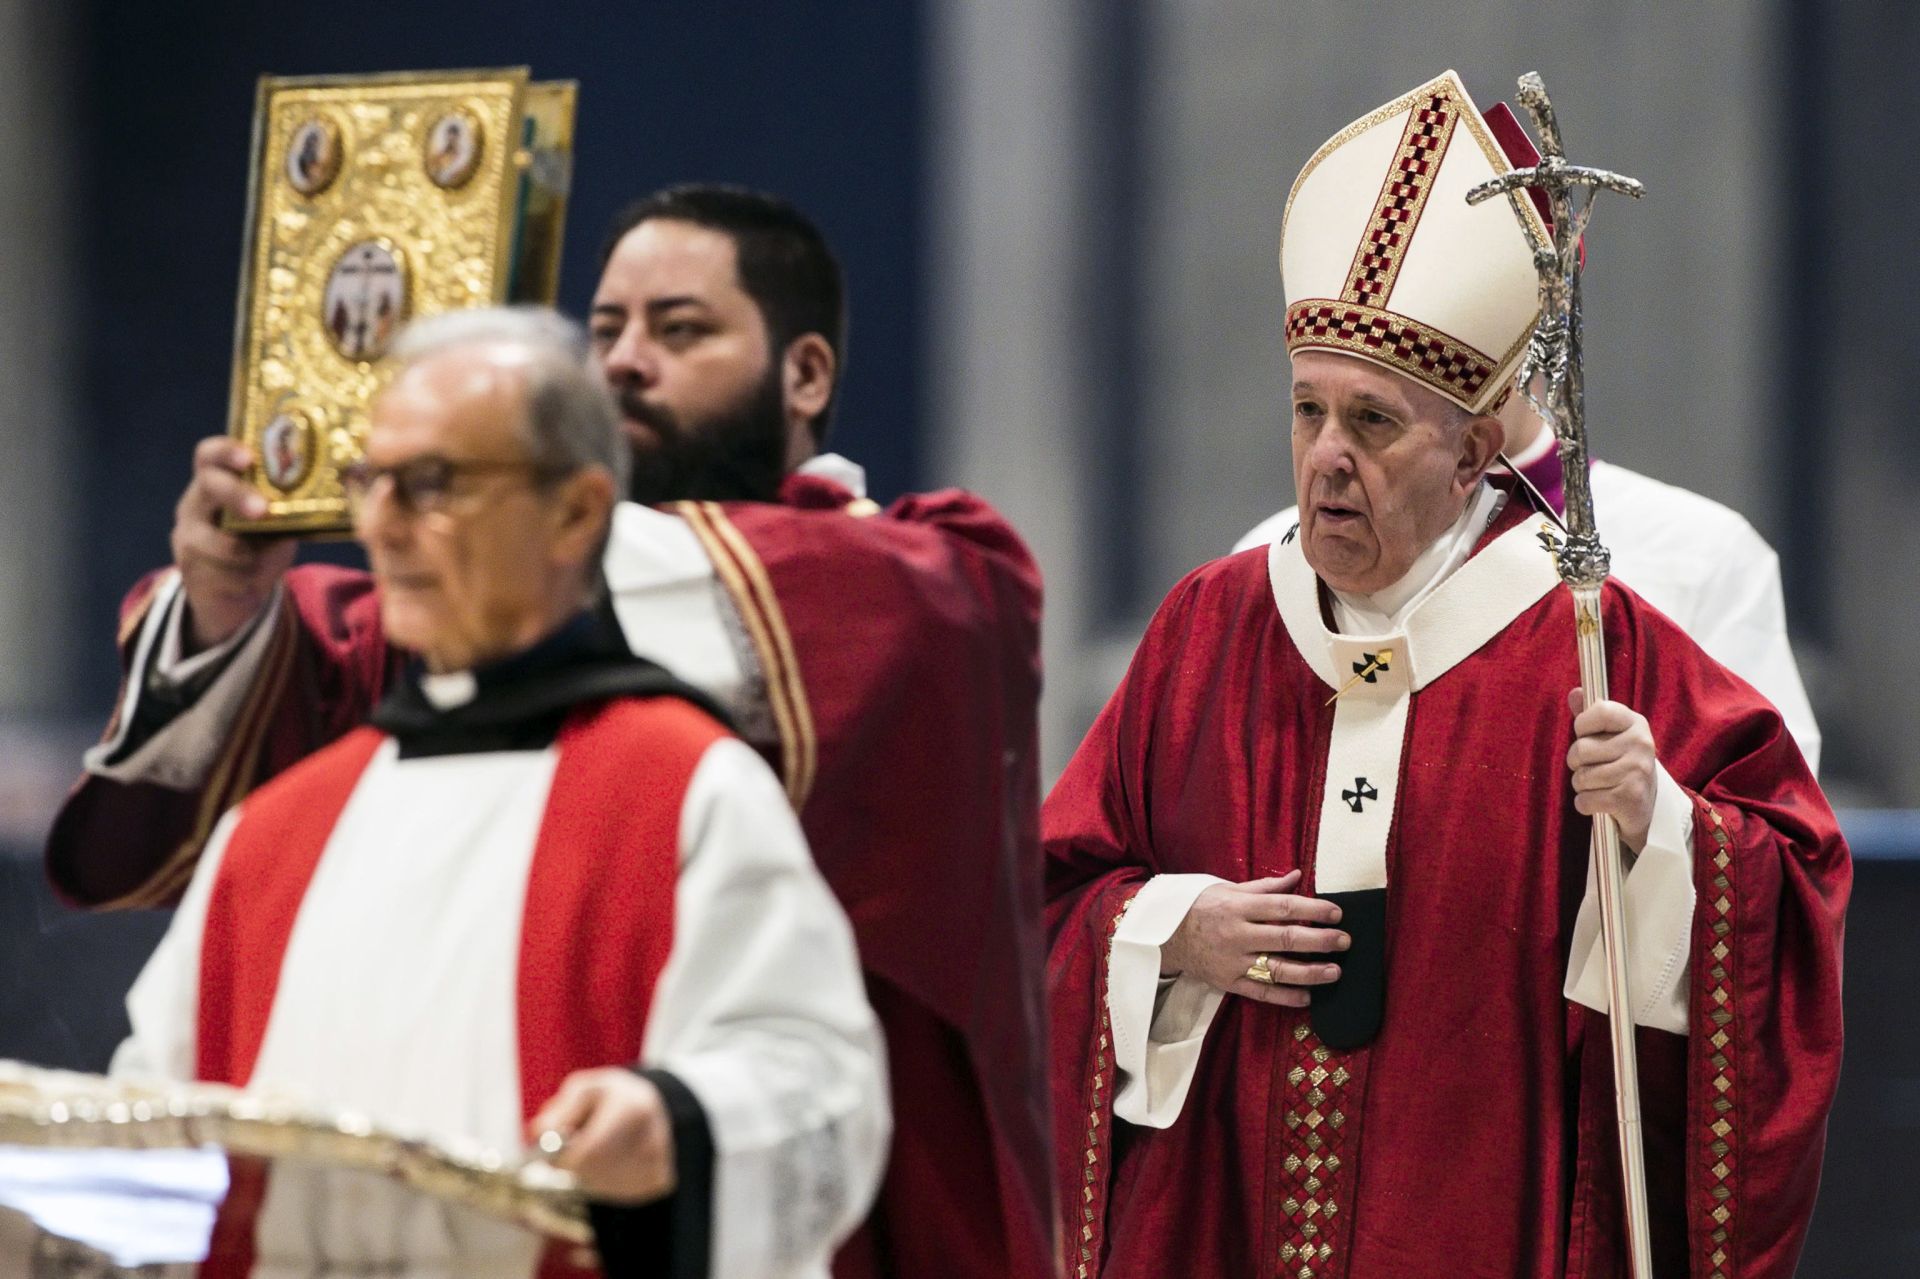 Mostantól világi bírák ítélkeznek a bűncselekményt elkövető katolikus főpapok fölött